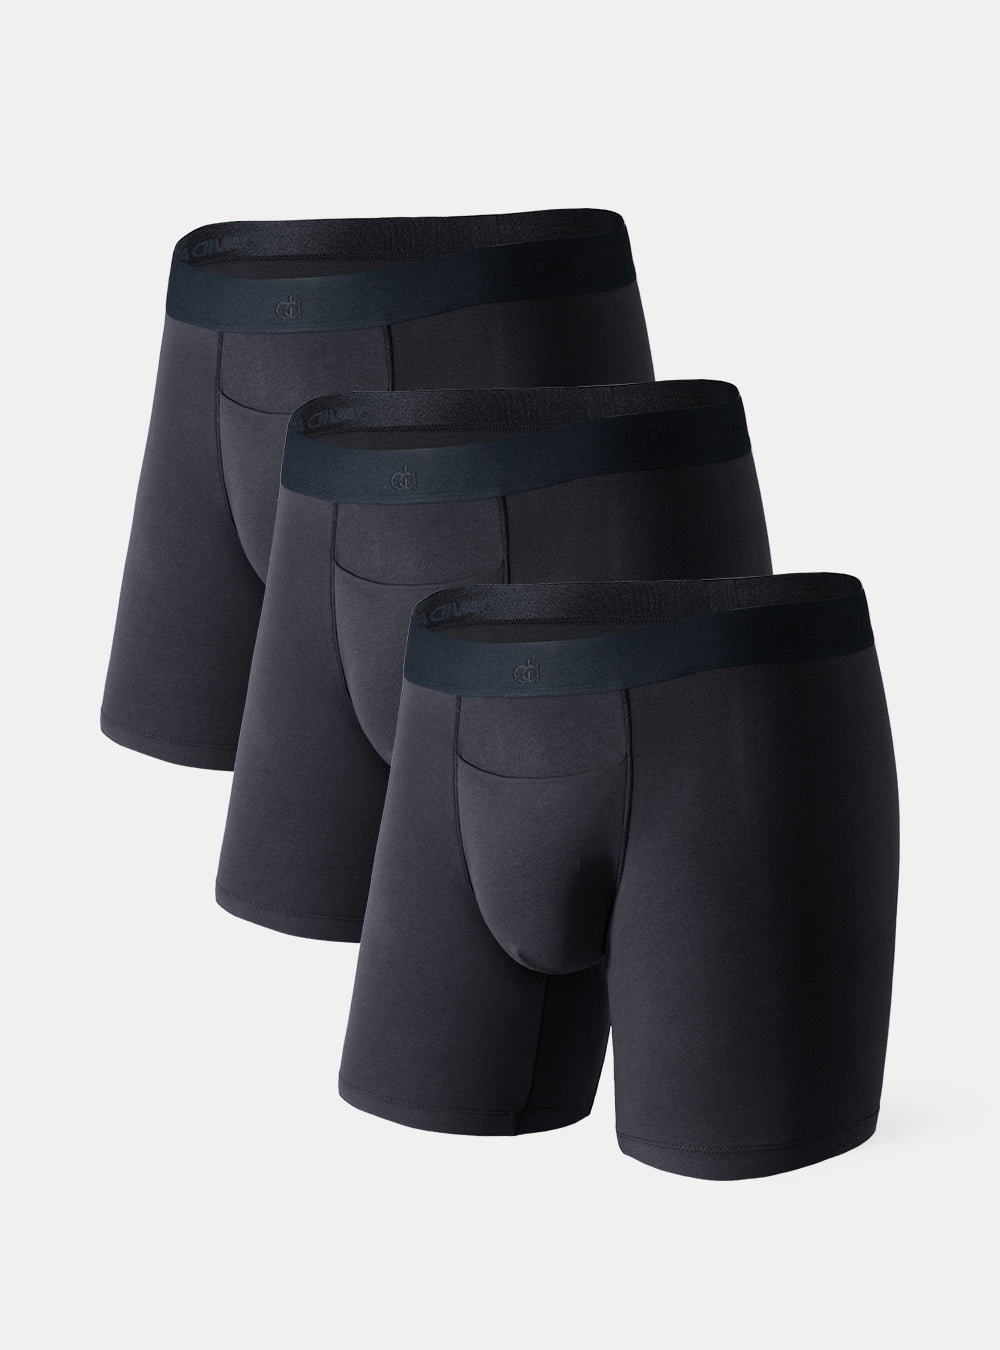 RXIRUCGD Men's Underwear Men's Underwear Cotton Large Size Fatty Men's Boxer  Underpants Extra Long Sport Solid Color Mens Underwear Boxer Briefs Pack  Black 